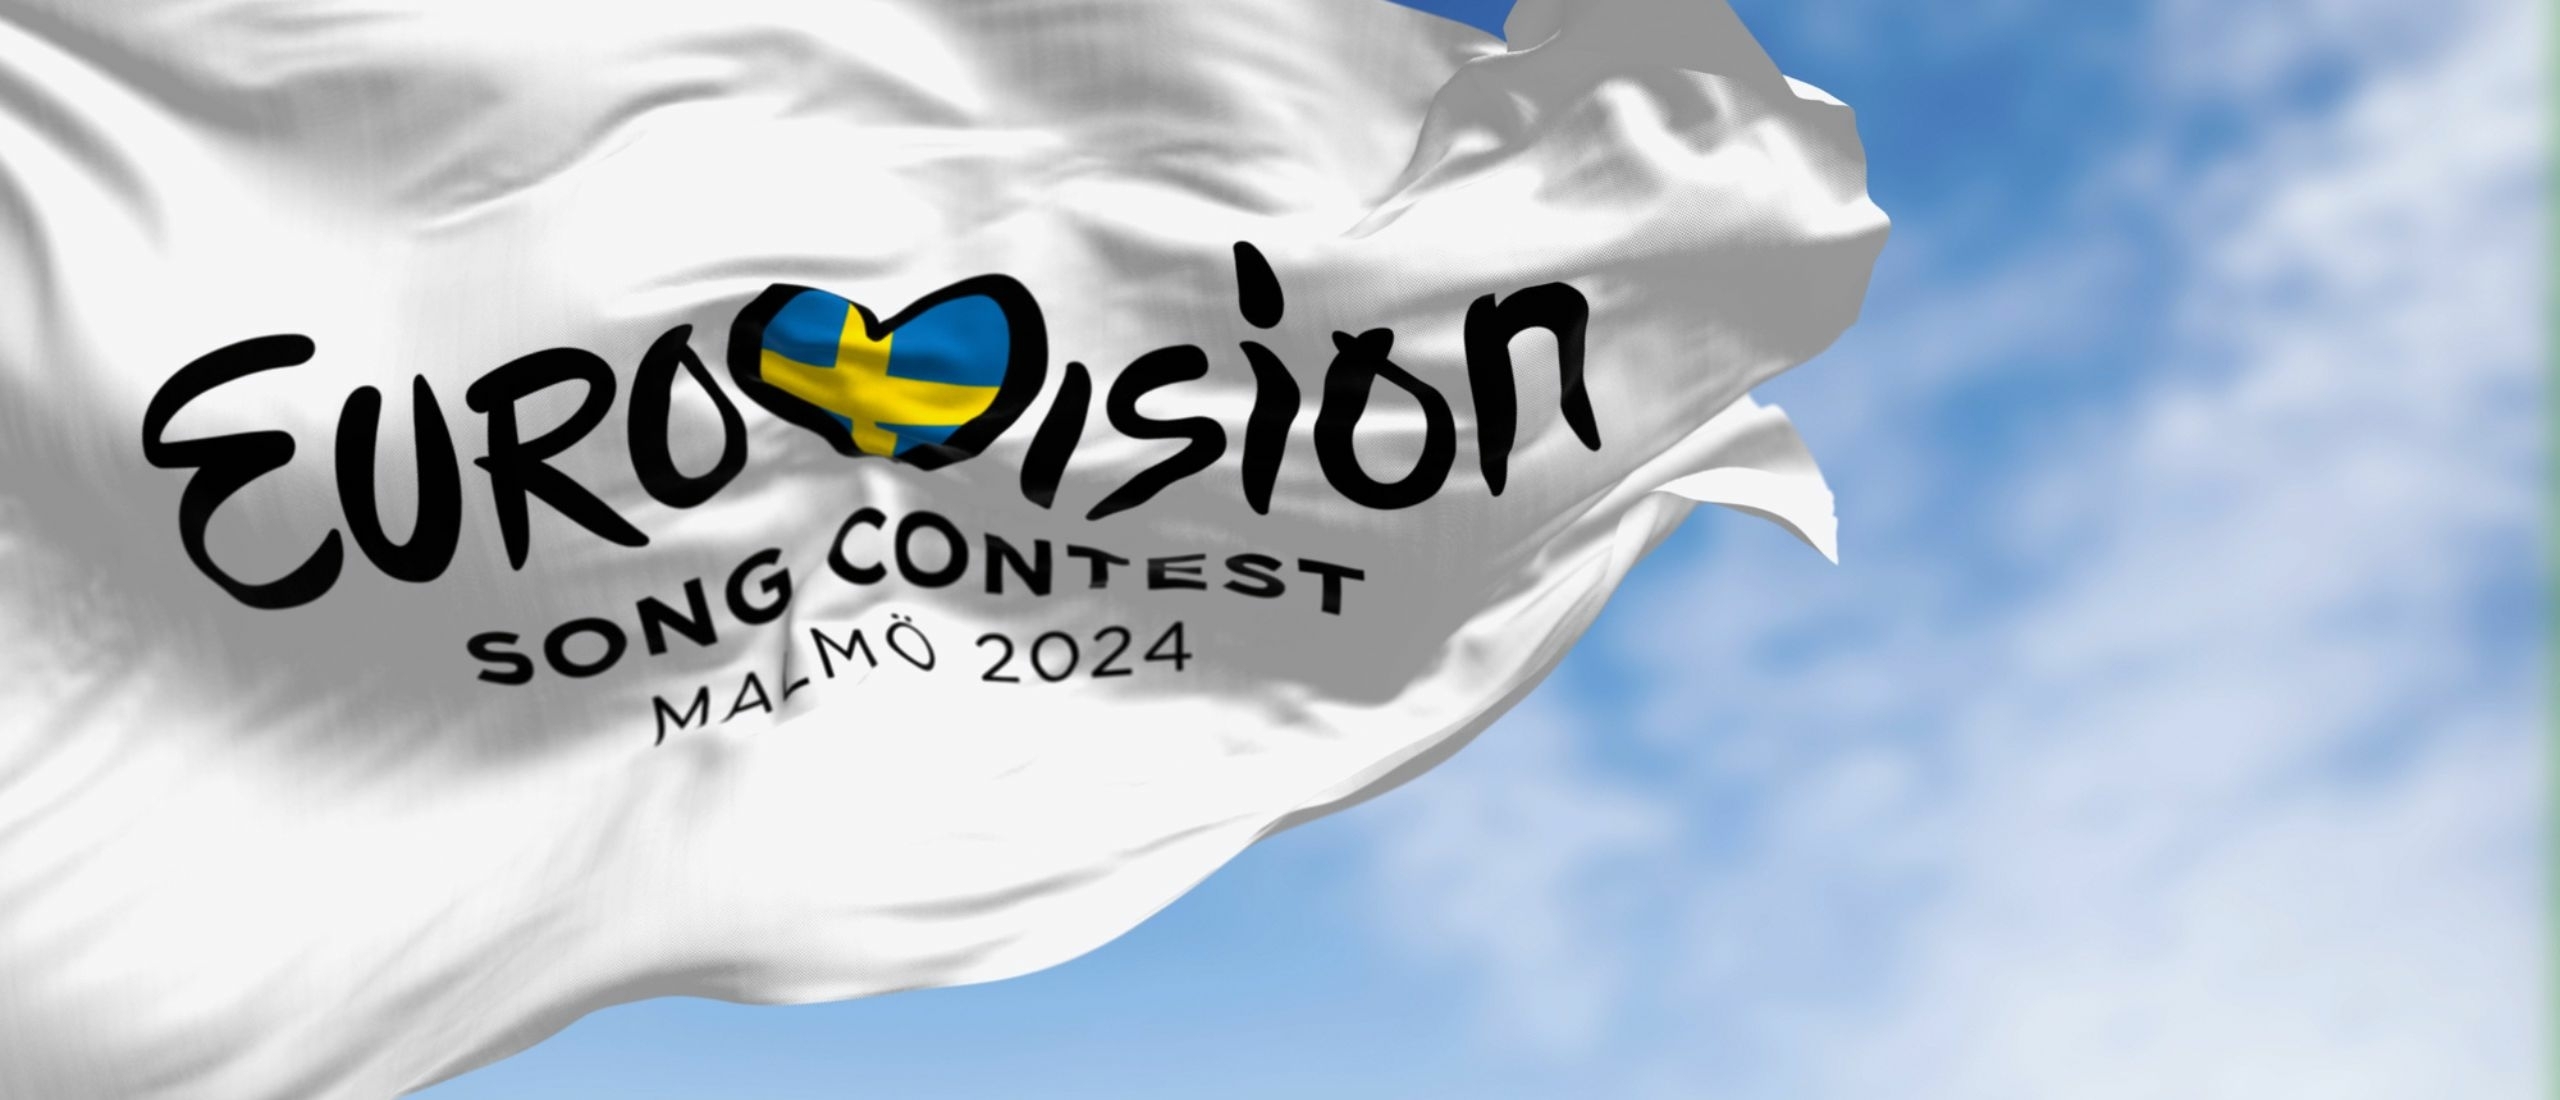 Eurovisie Songfestival Europapa en de invloed op festivals in 2024